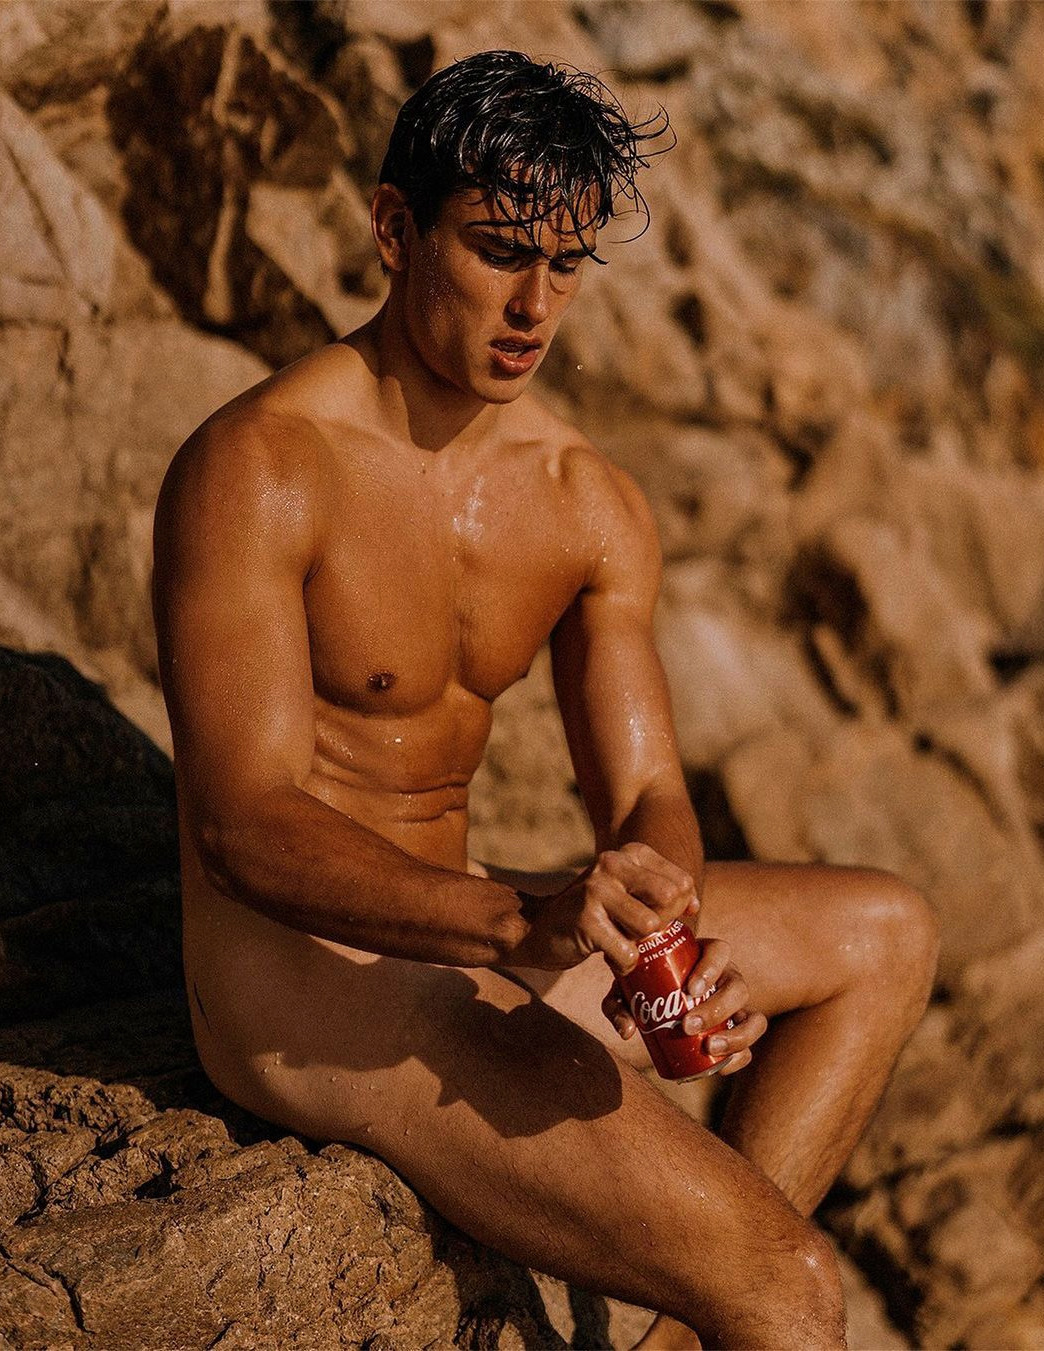 Italian nude male models